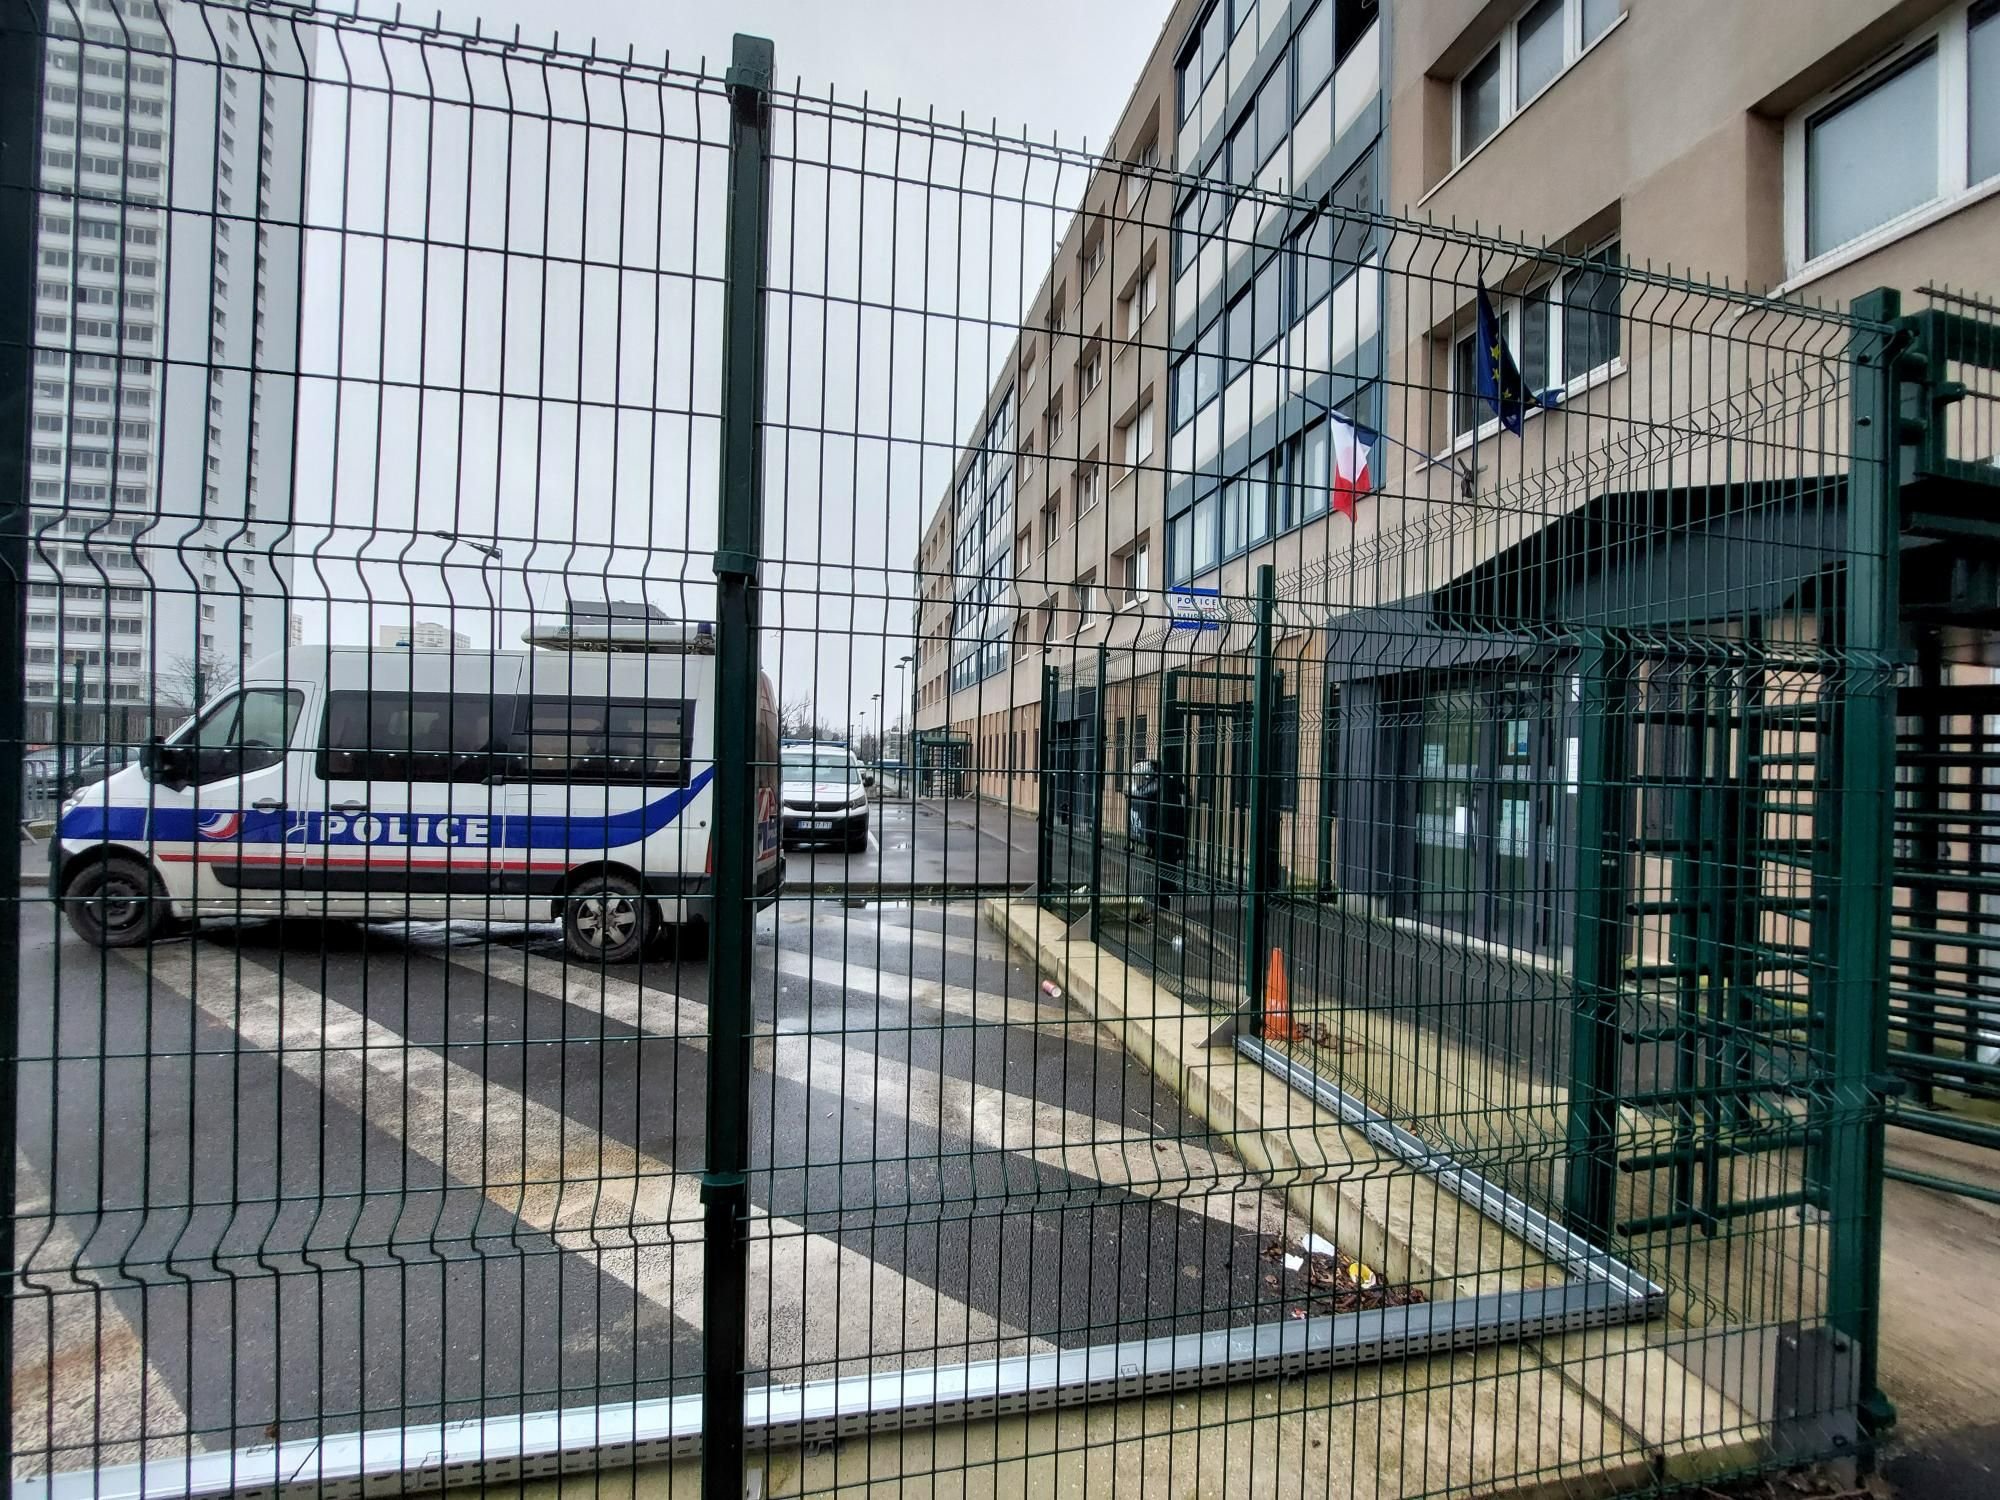 Le commissariat de Champigny (Val-de-Marne), situé dans le quartier prioritaire du Bois-l'Abbé, classé quartier de reconquête républicaine, fait face à un manque d'effectifs criant. LP/Laure Parny